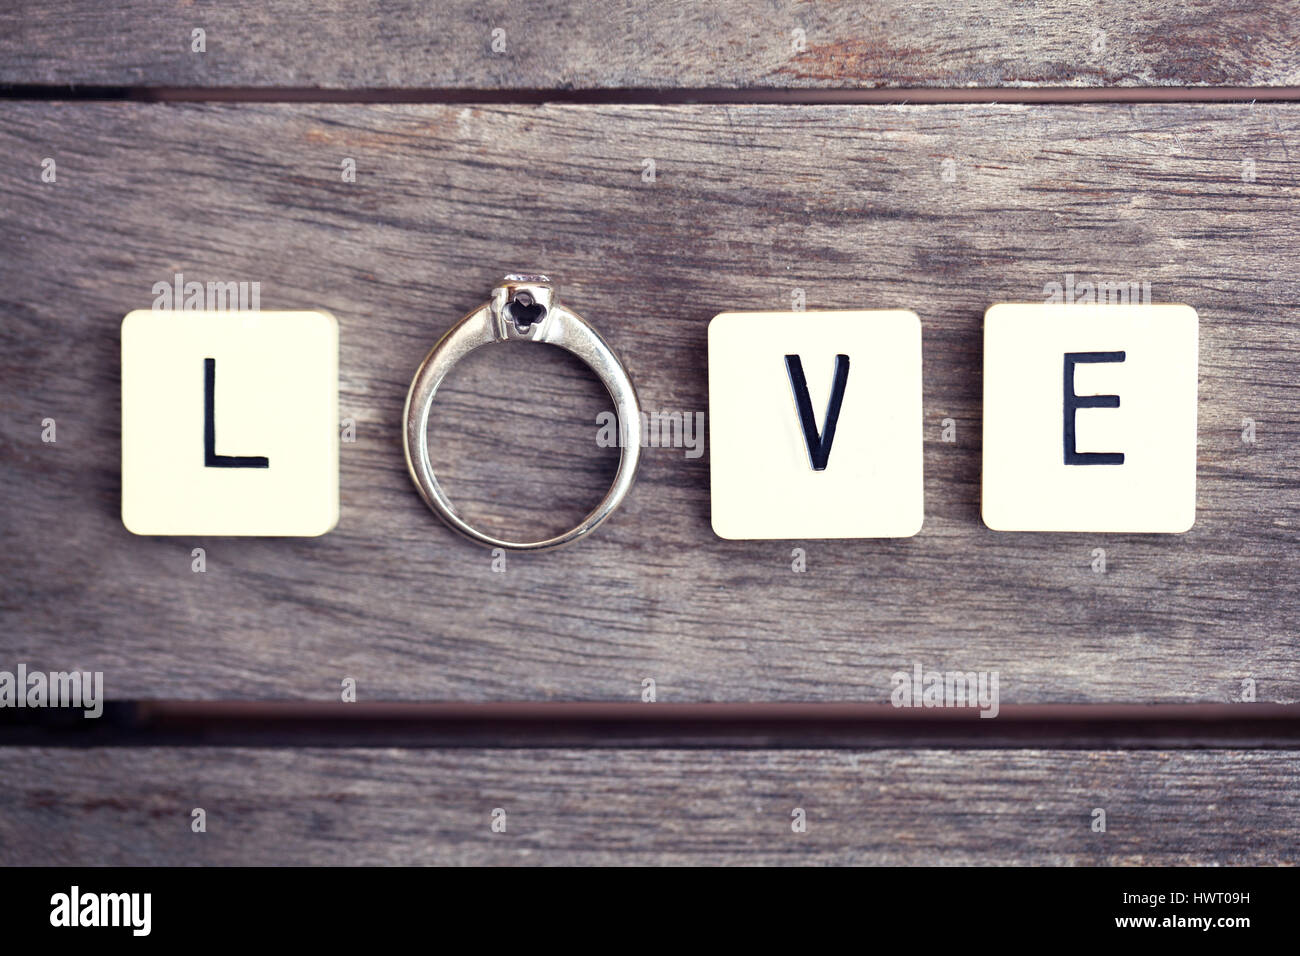 Carta de azulejos y el anillo la ortografía de la palabra "amor". Imagen conceptual de amor, boda, mariage, compromiso, etc... Foto de stock